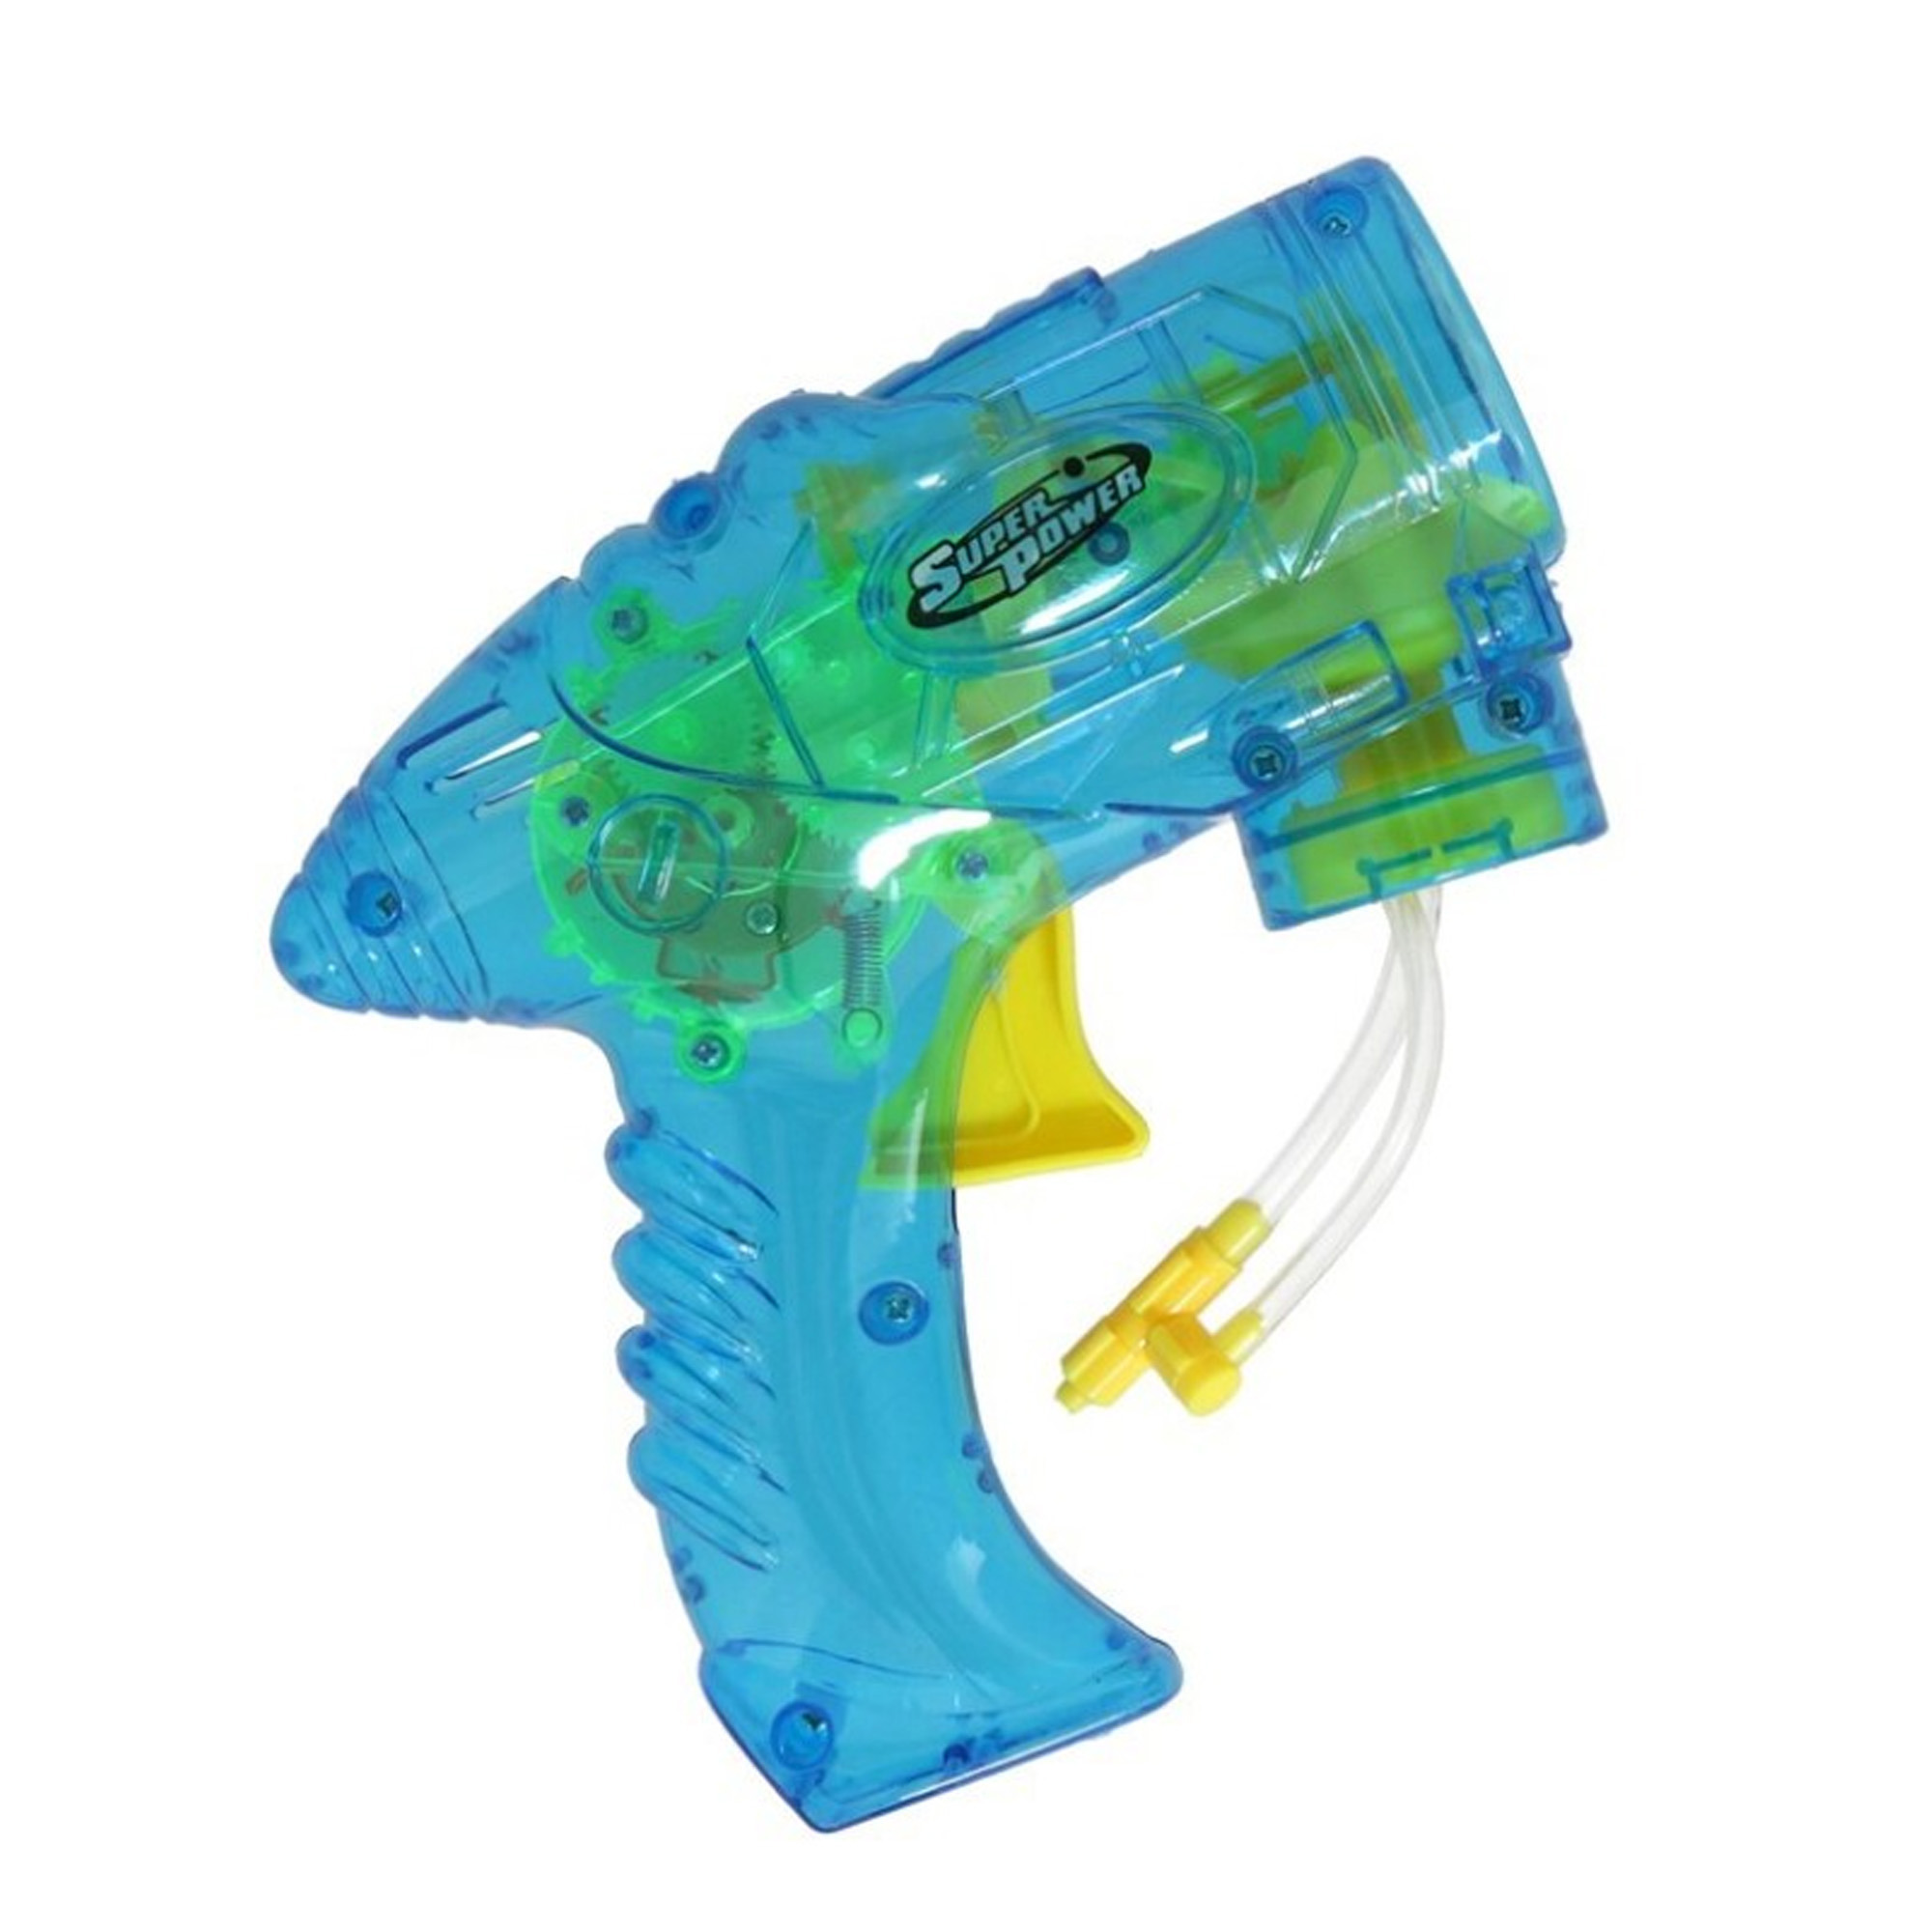 Bellenblaas speelgoed pistool met vullingen blauw 15 cm plastic bellen blazen